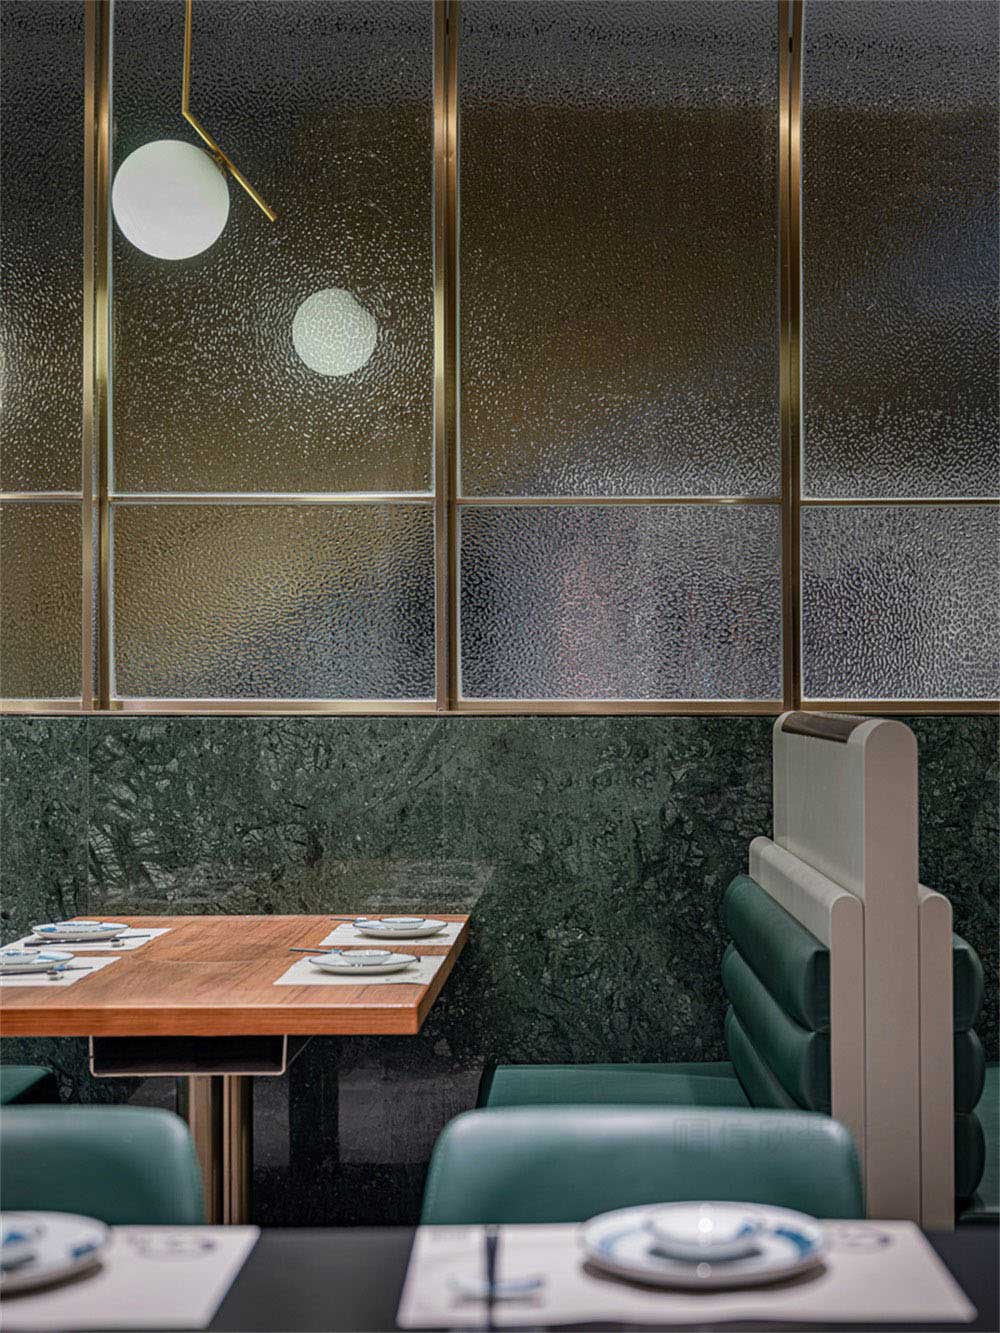 深圳宝安轻奢风格铁板烧餐厅装修设计空间布局